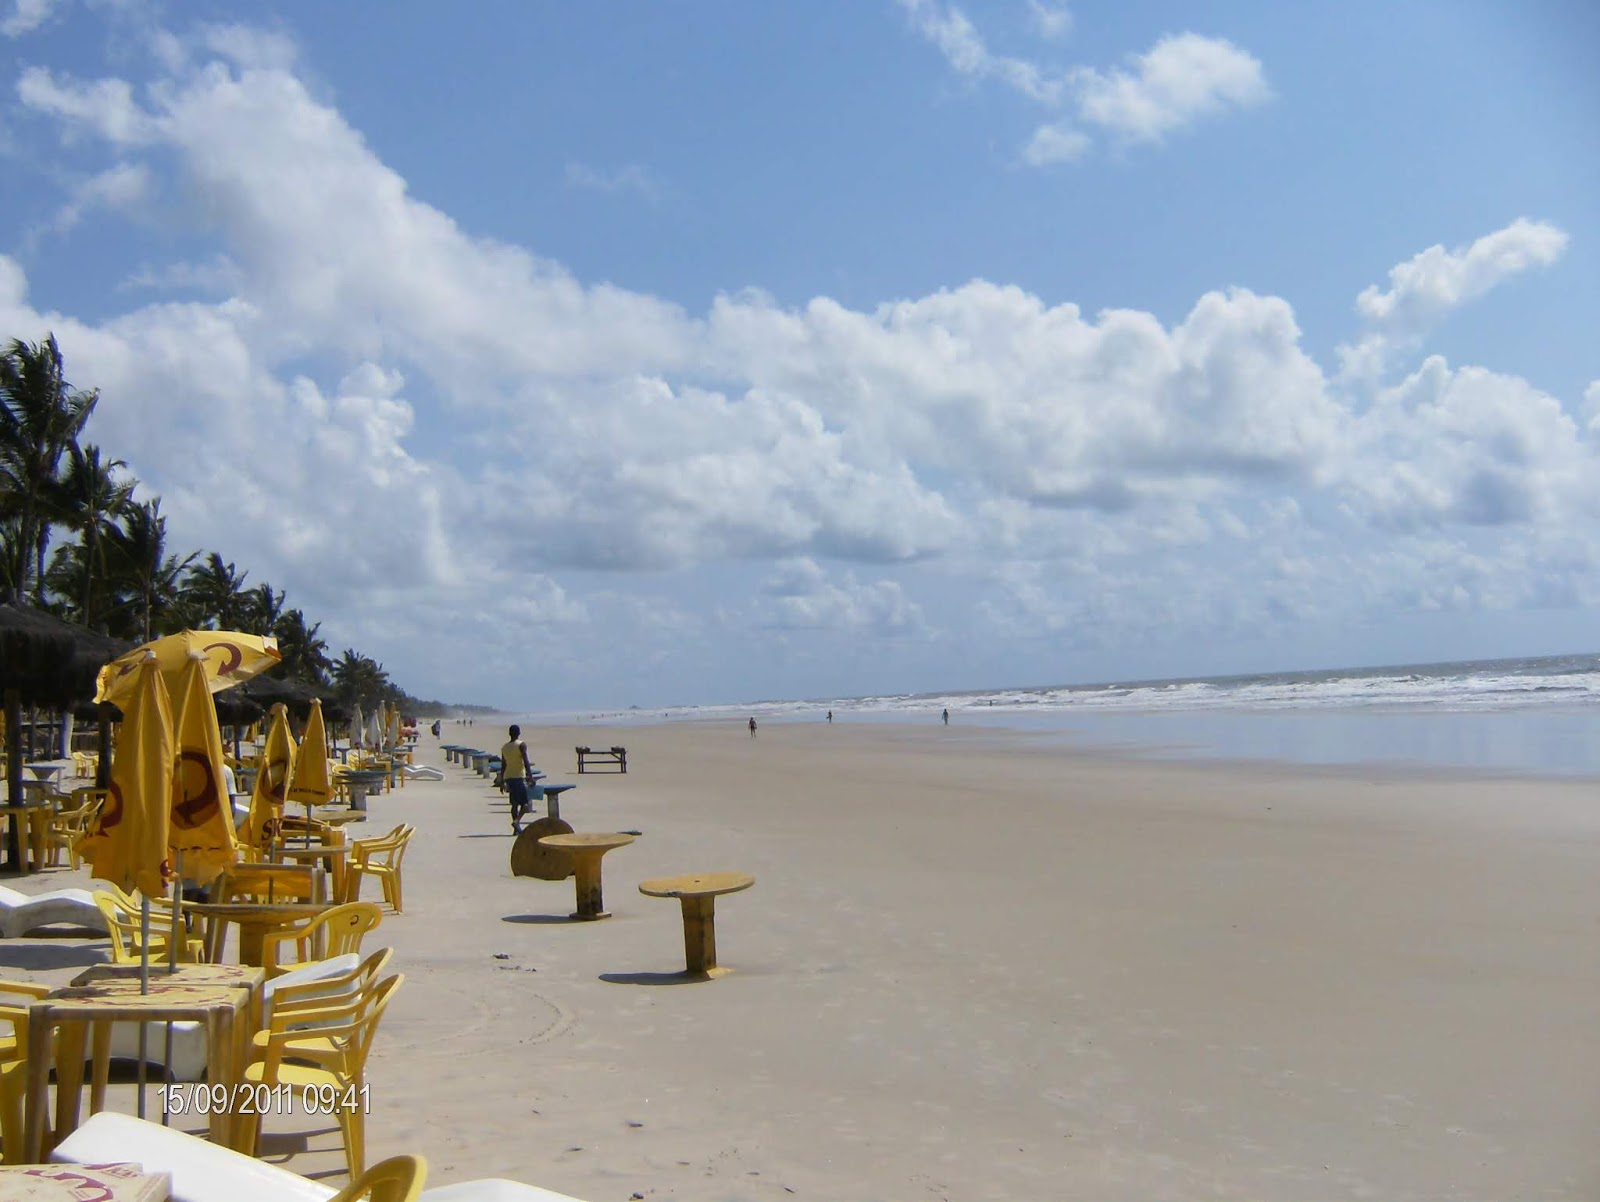 Praia do Sul'in fotoğrafı imkanlar alanı